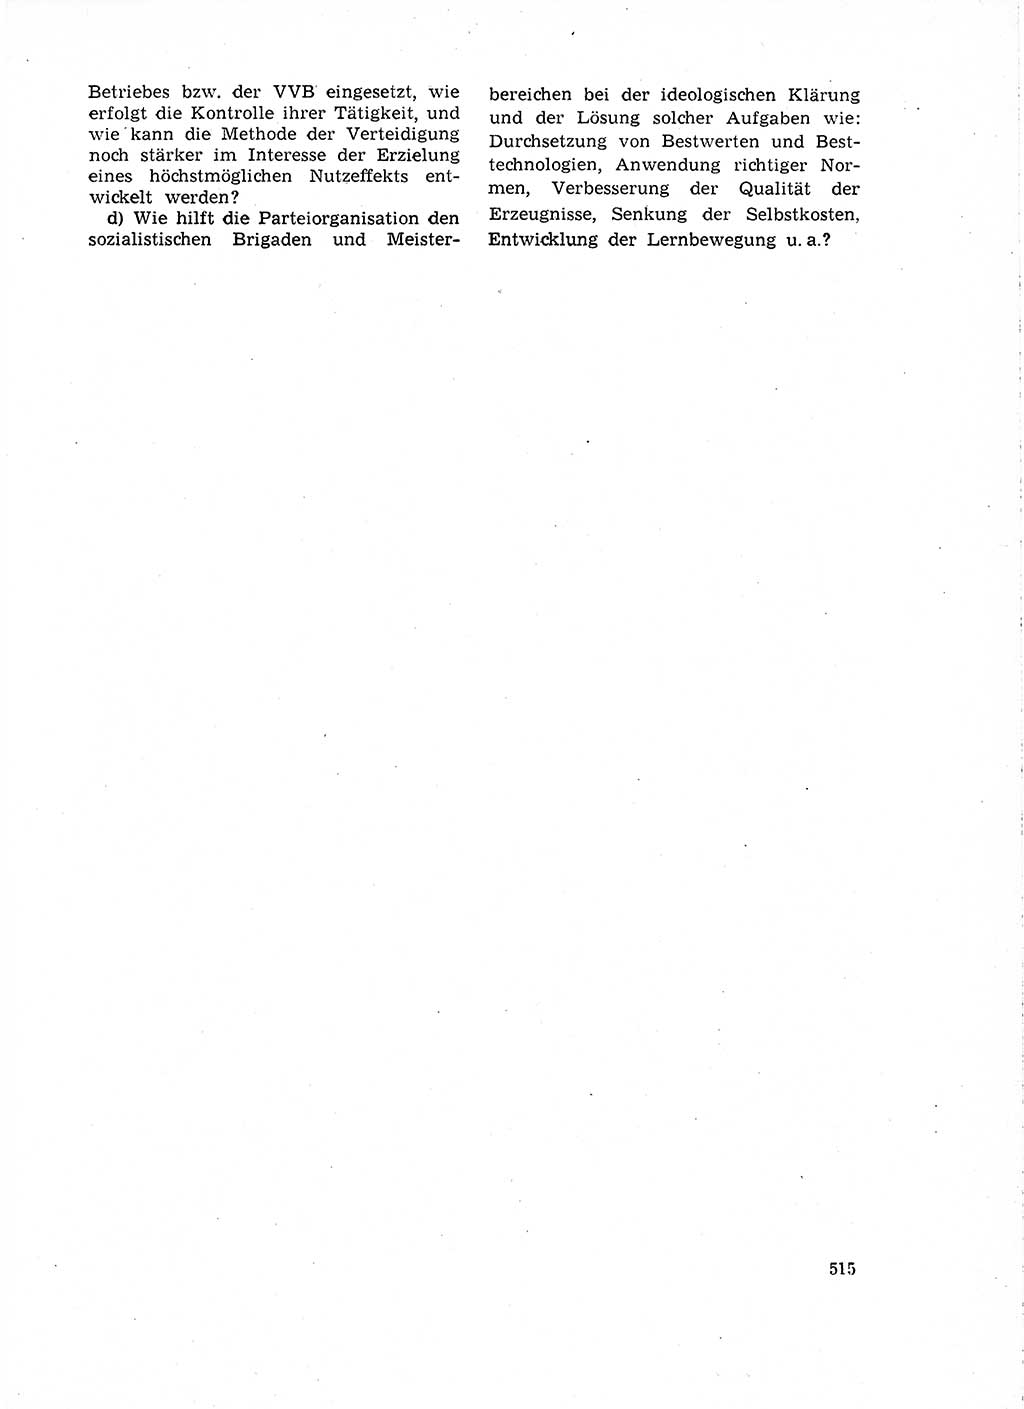 Neuer Weg (NW), Organ des Zentralkomitees (ZK) der SED (Sozialistische Einheitspartei Deutschlands) für Fragen des Parteilebens, 18. Jahrgang [Deutsche Demokratische Republik (DDR)] 1963, Seite 515 (NW ZK SED DDR 1963, S. 515)